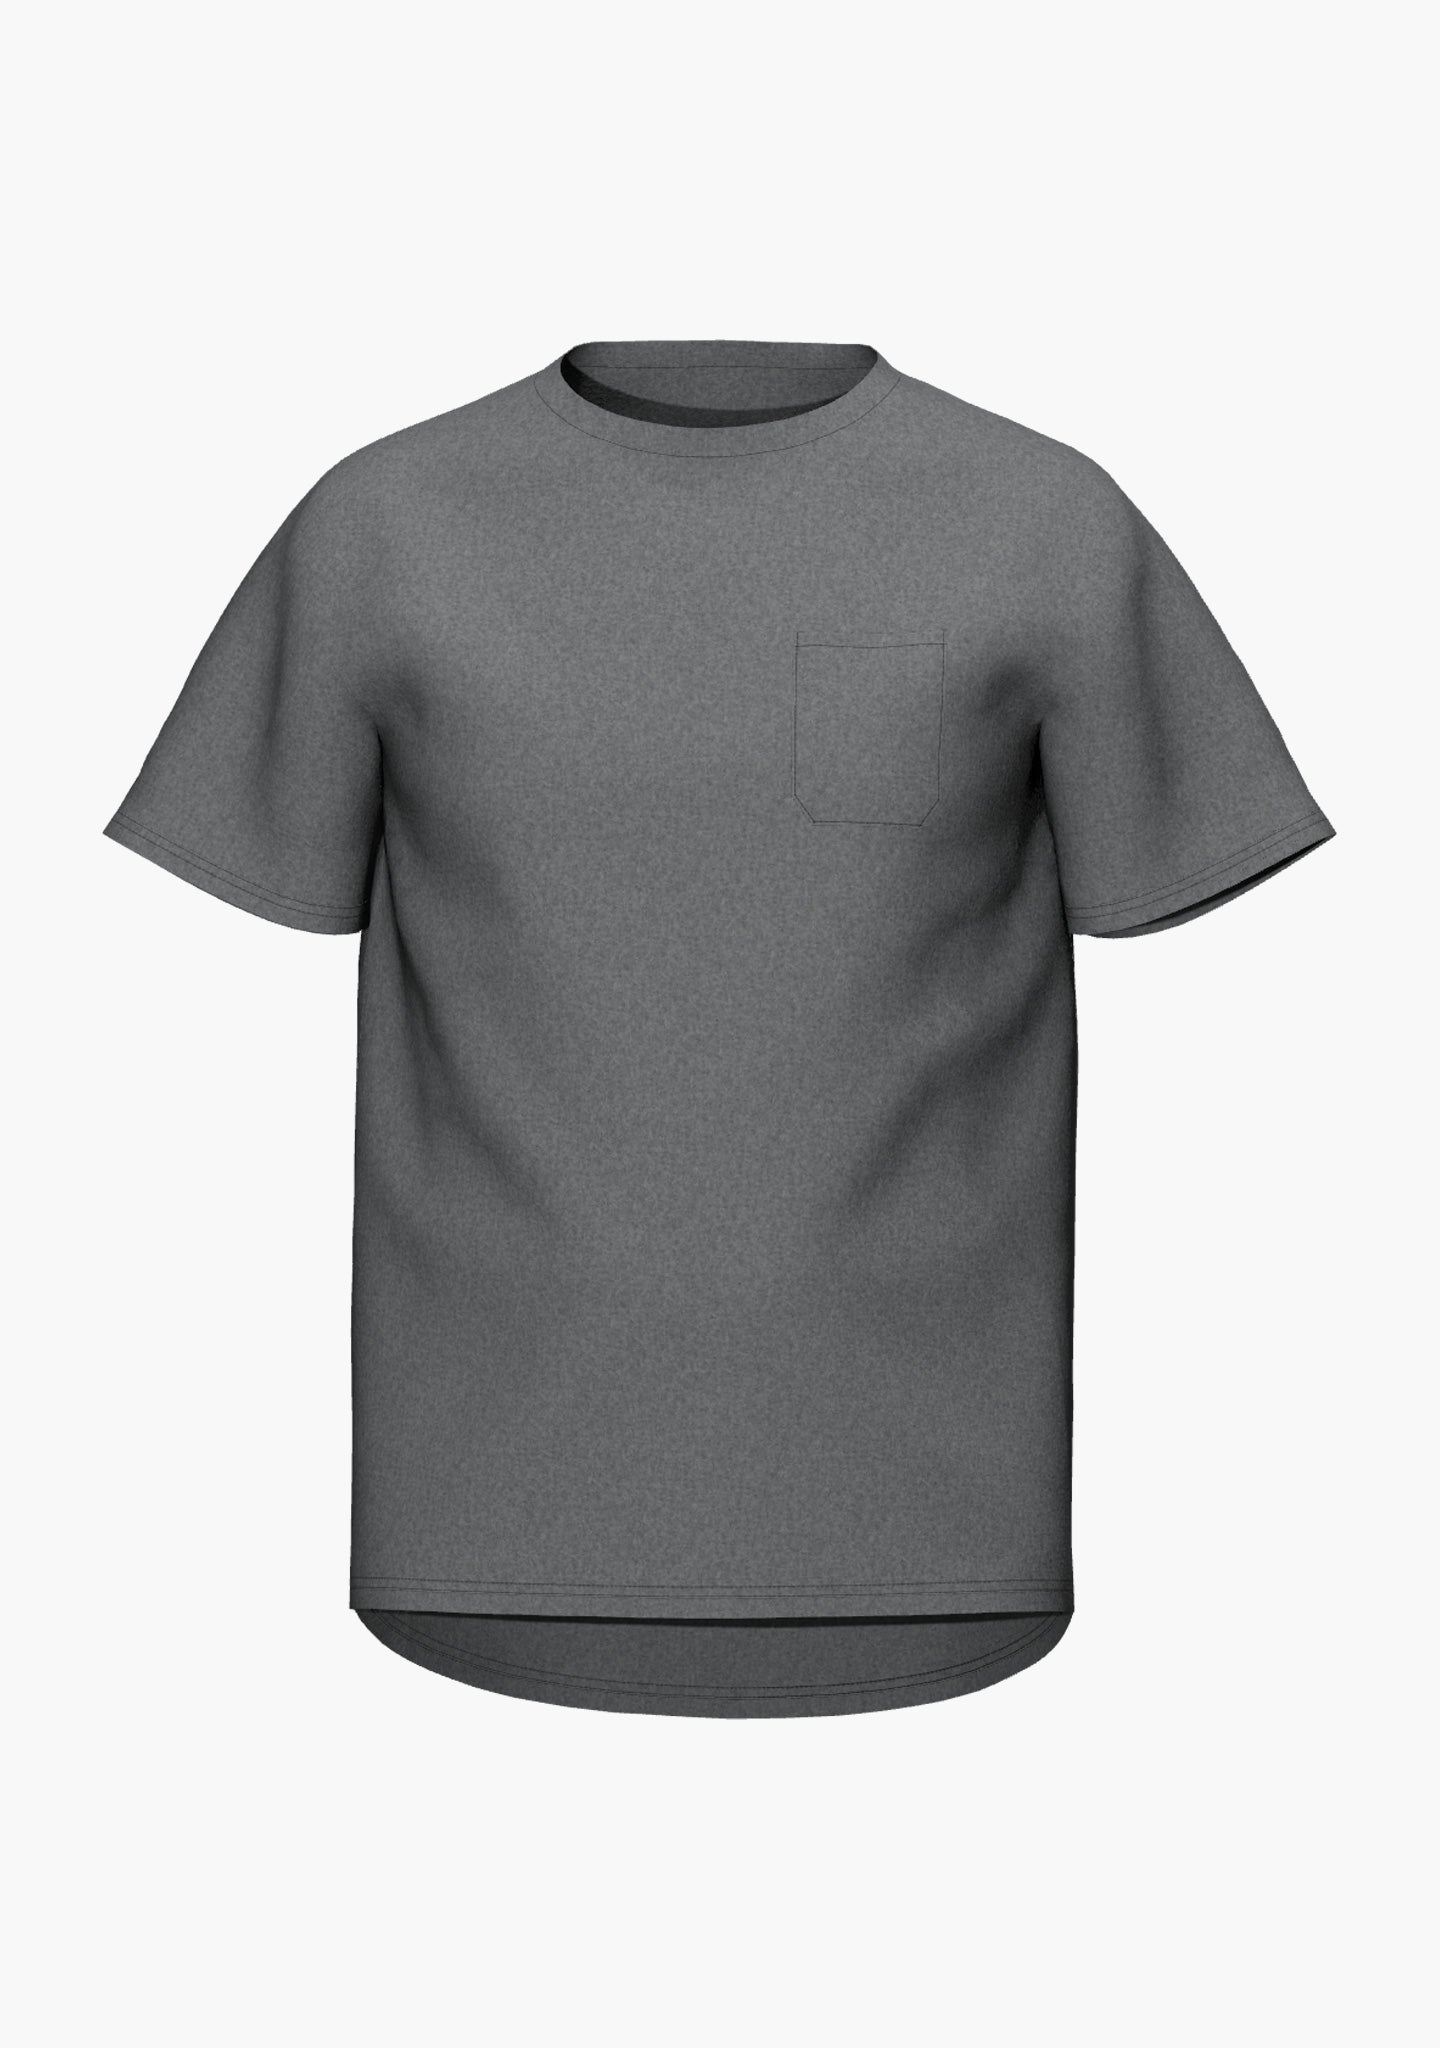 Leichtes, funktionales T-Shirt in anthrazit und light grey mit kleiner Brusttasche und einem Logoprint im Nacken (Ansicht front)